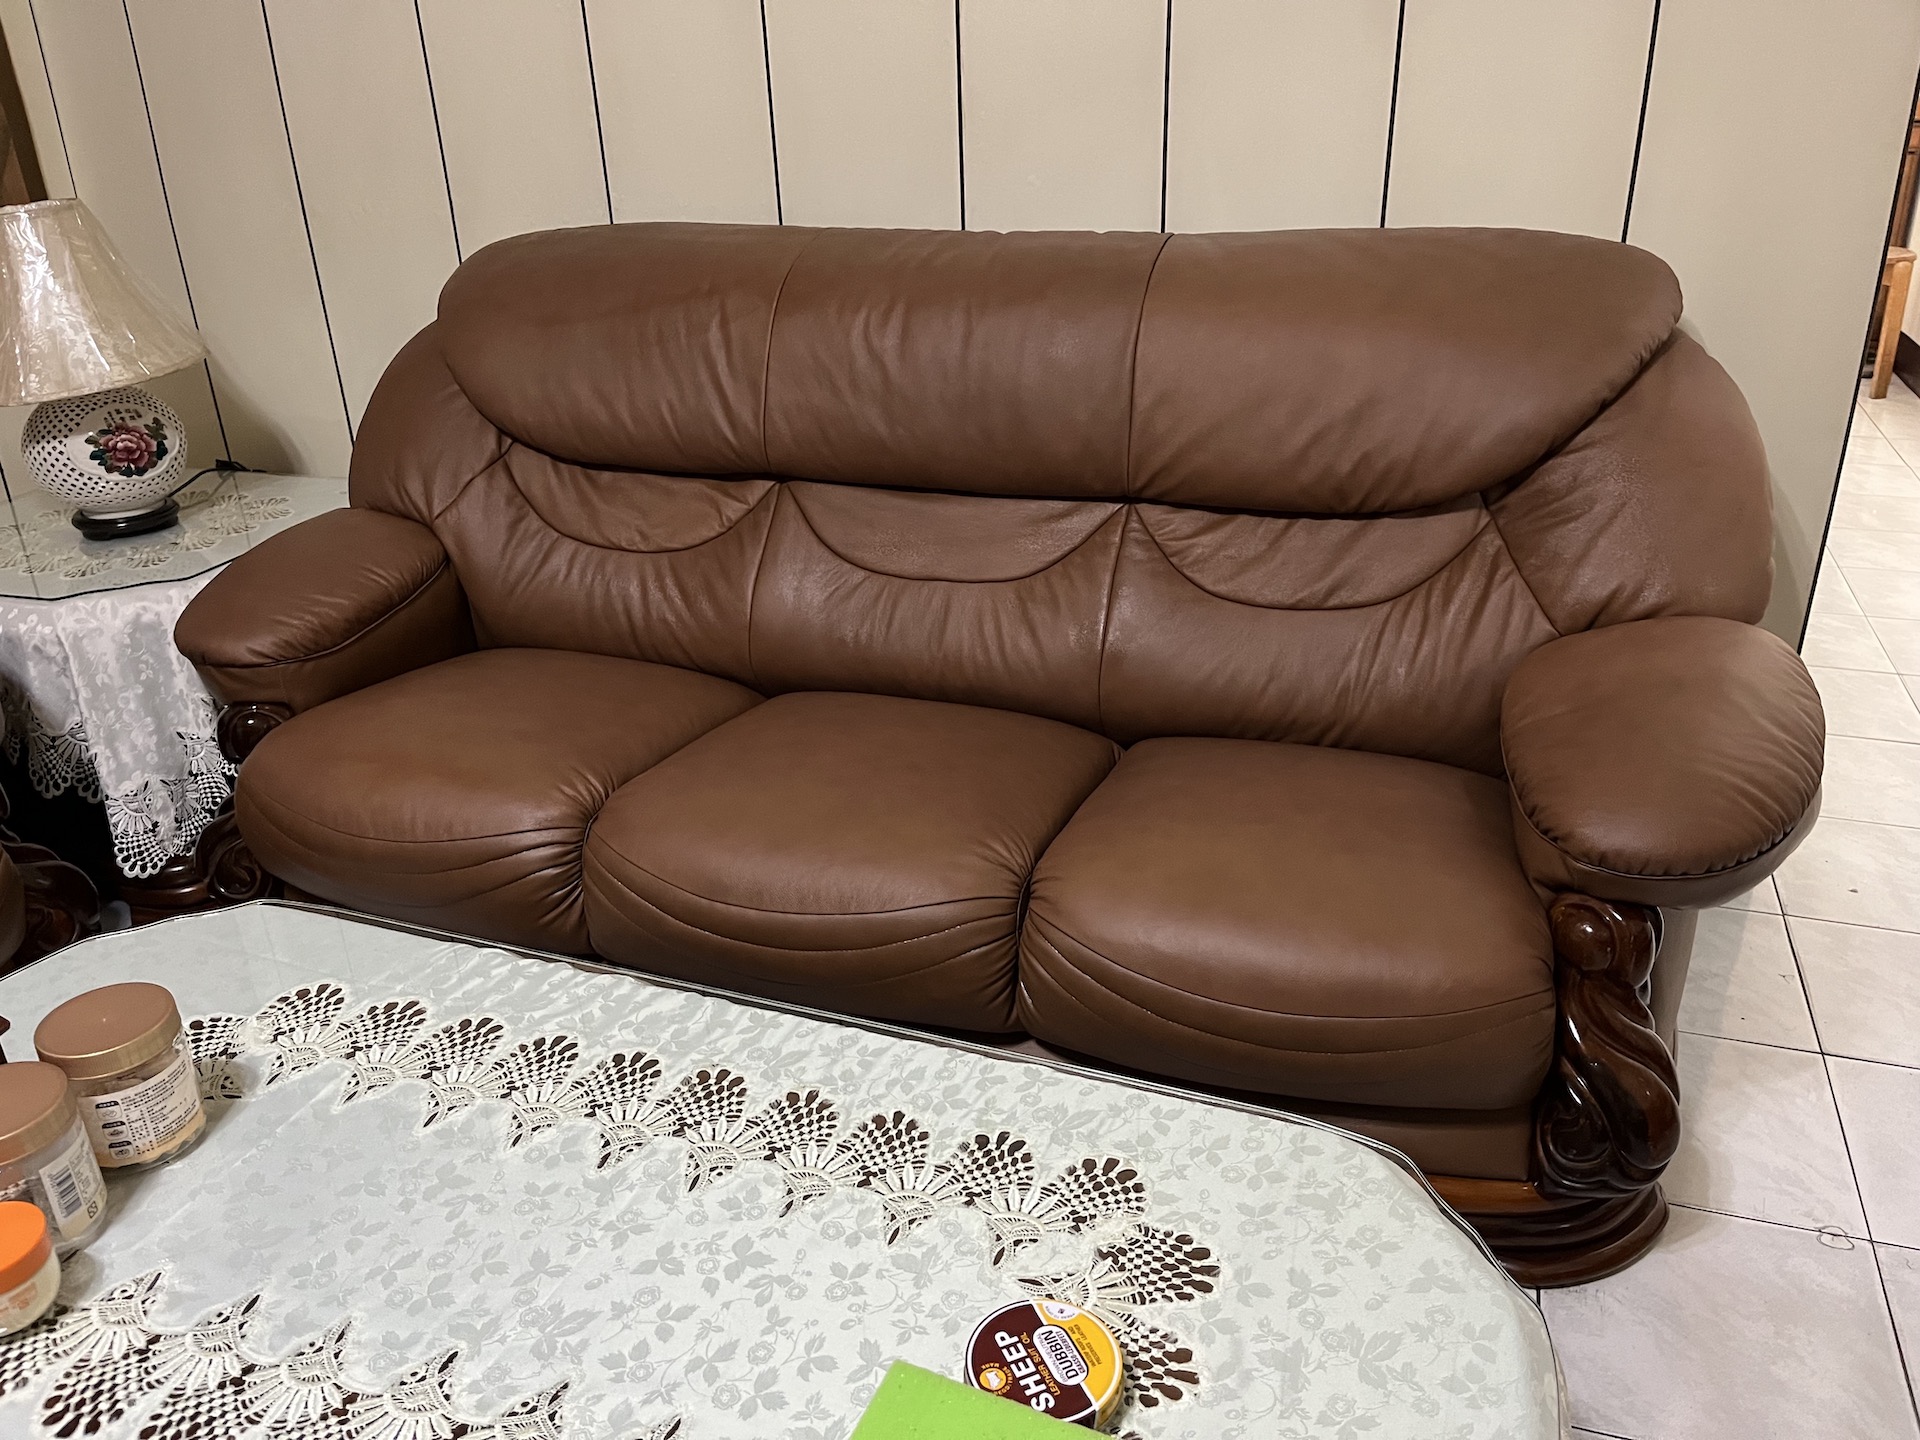 【客戶案例分享】台中太平傳統沙發翻修換半牛皮